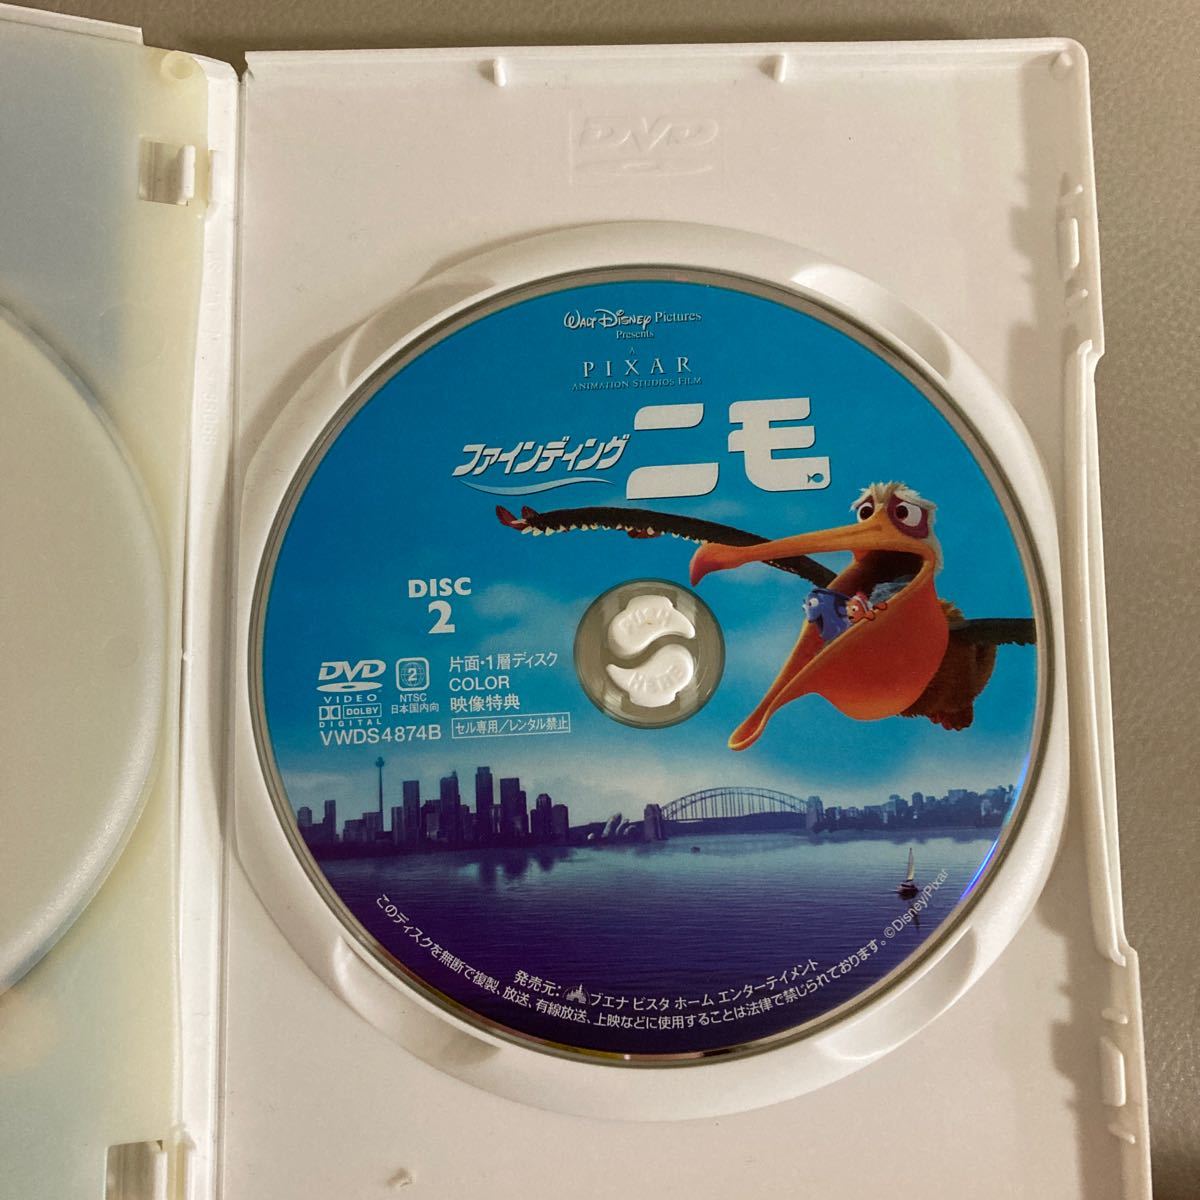 ファインディングニモ DVD ディズニー Disney PIXAR 2枚組